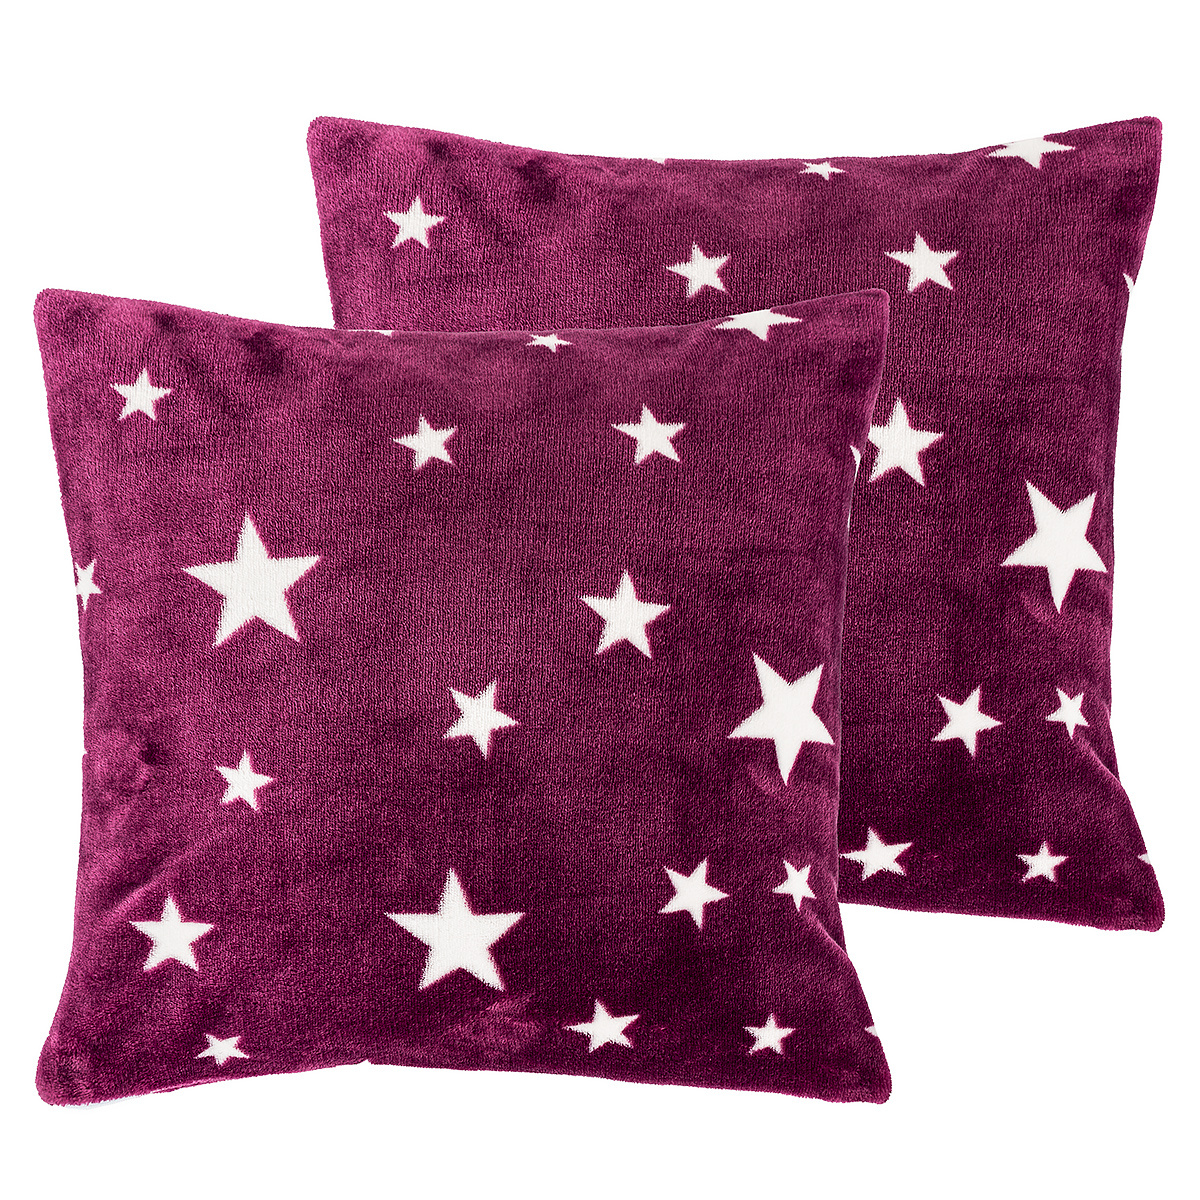 4Home Stars violet párnahuzat, 40 x 40 cm, sada 2 ks